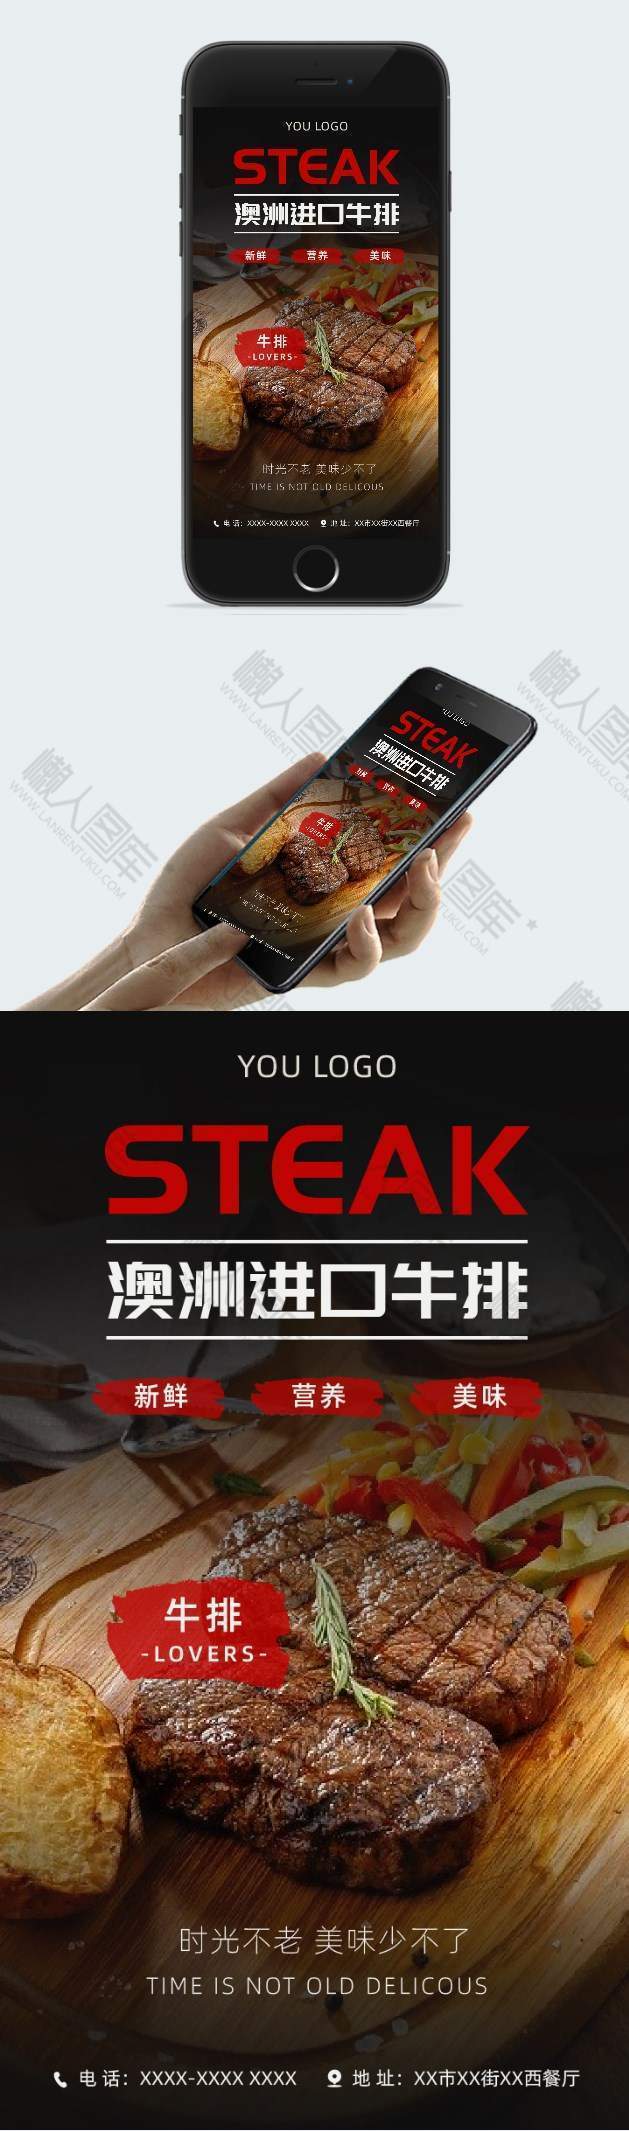 简约餐厅牛排宣传插画配图手机海报